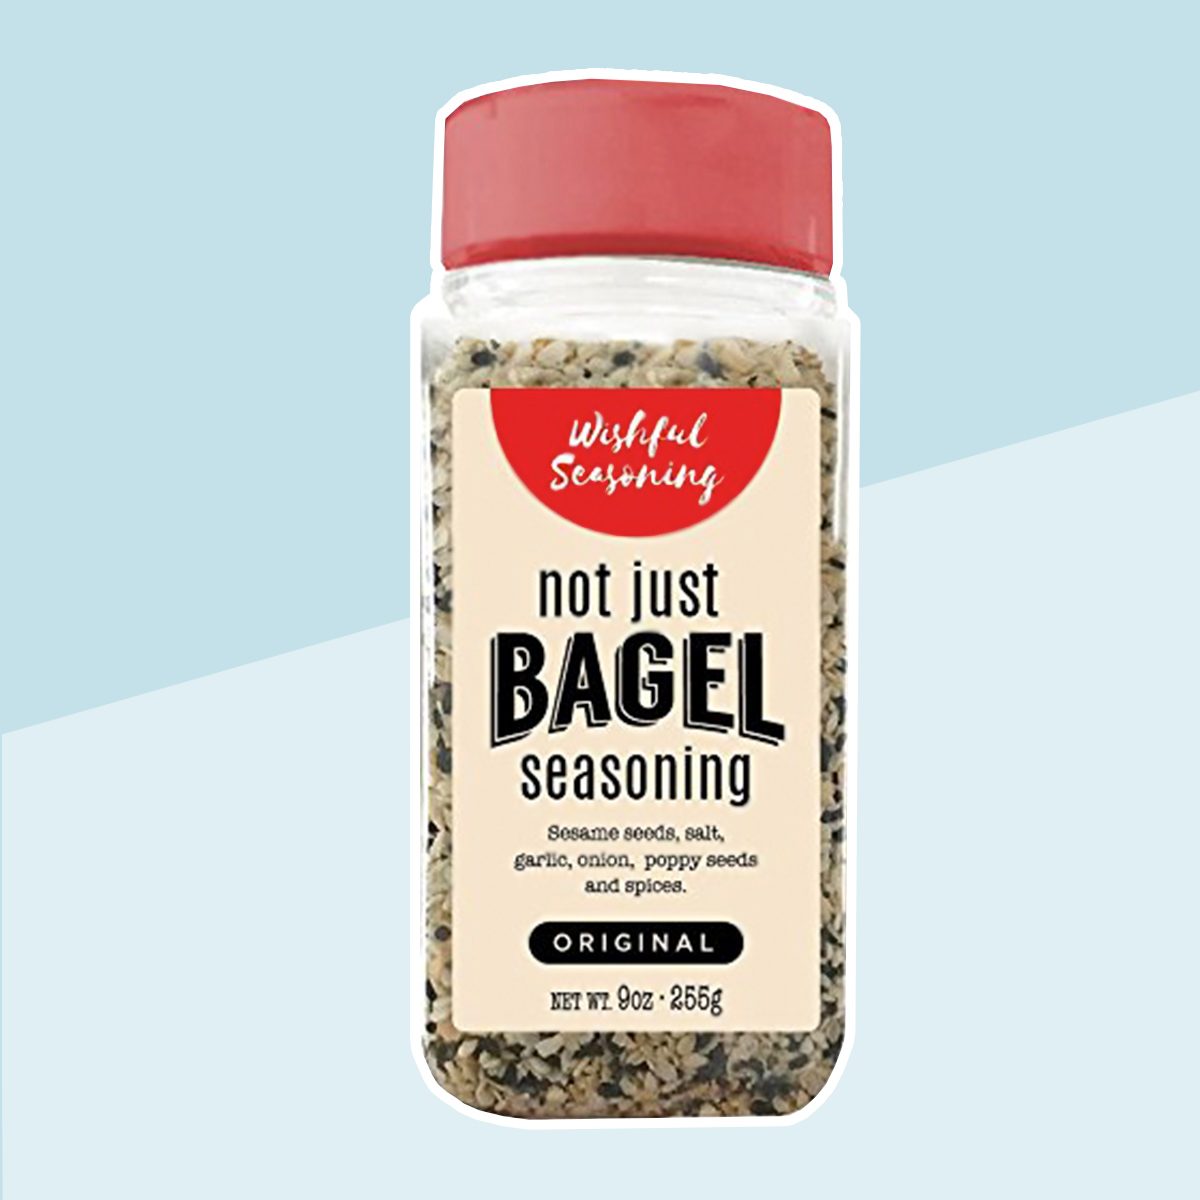 Aldi Is Selling Everything Bagel Seasonings In 3 Flavors